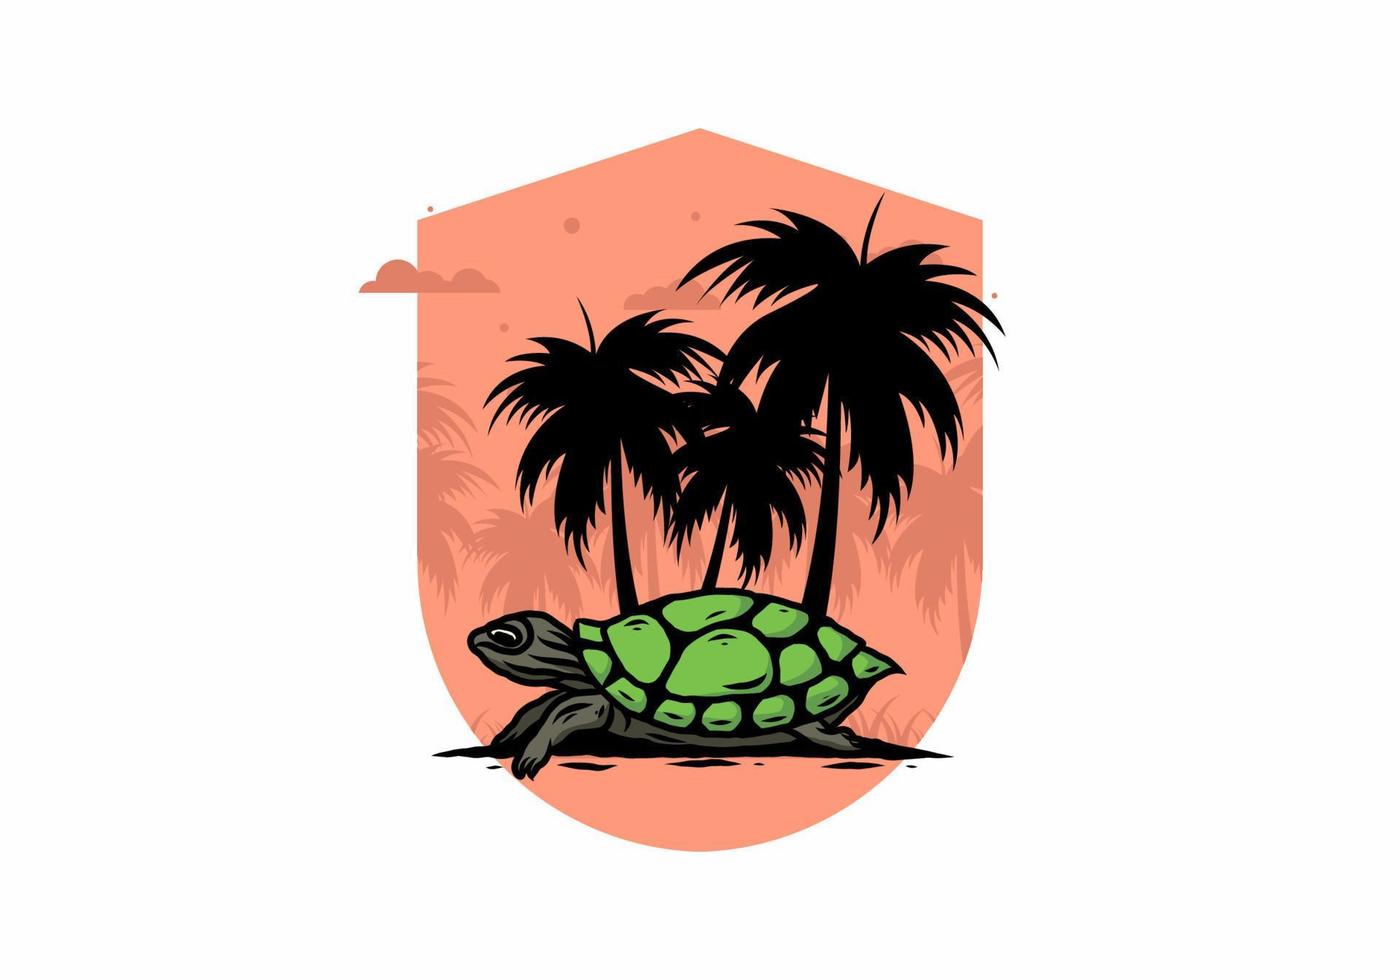 meeresschildkröte unter der kokosnussbaumillustration vektor